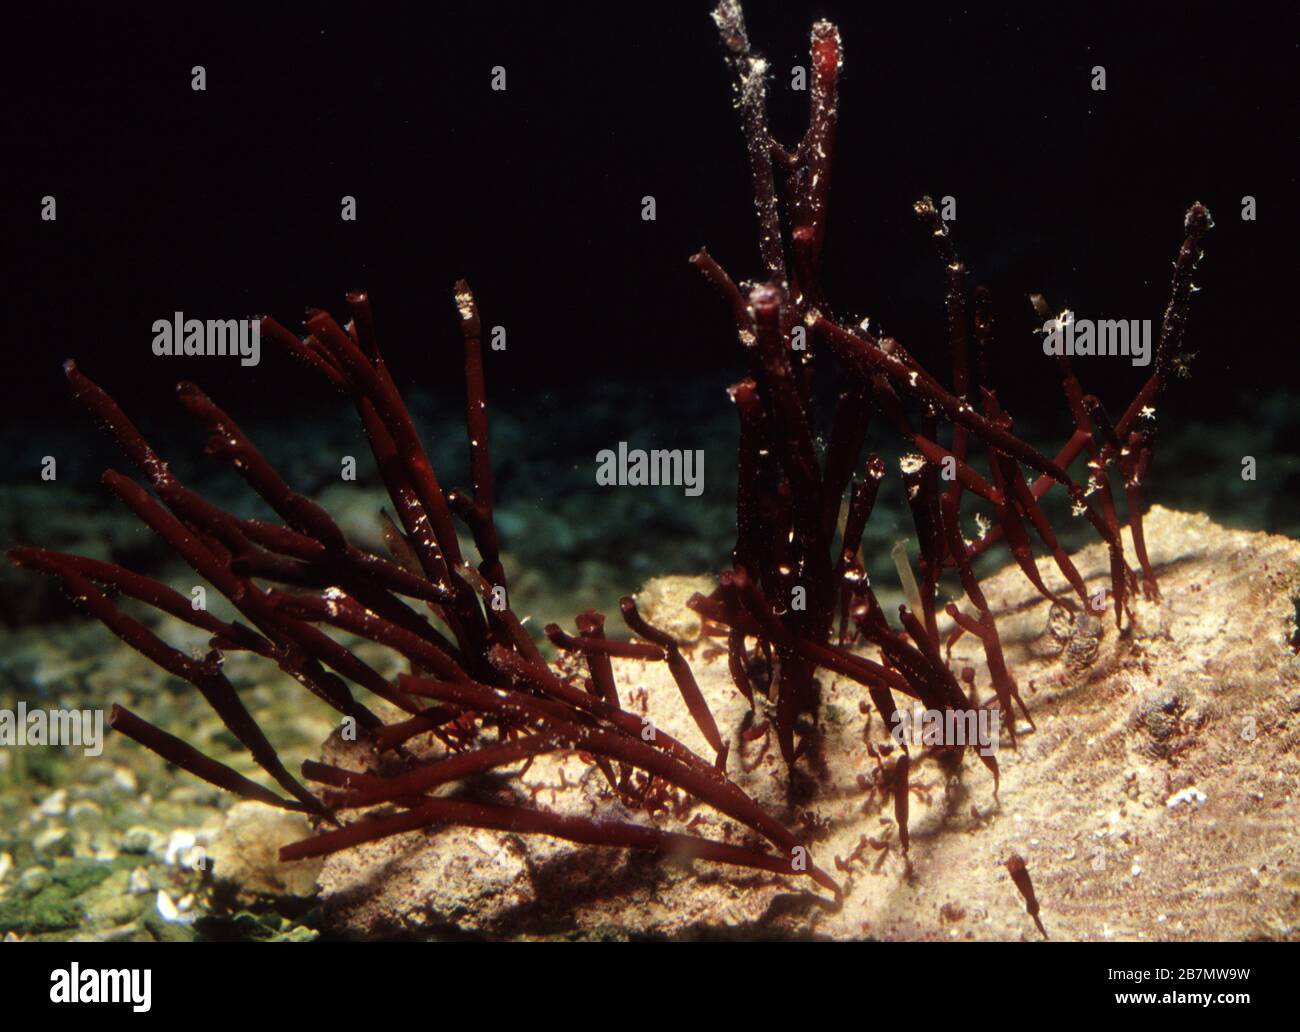 Red alga, Amphiroa sp. Stock Photo